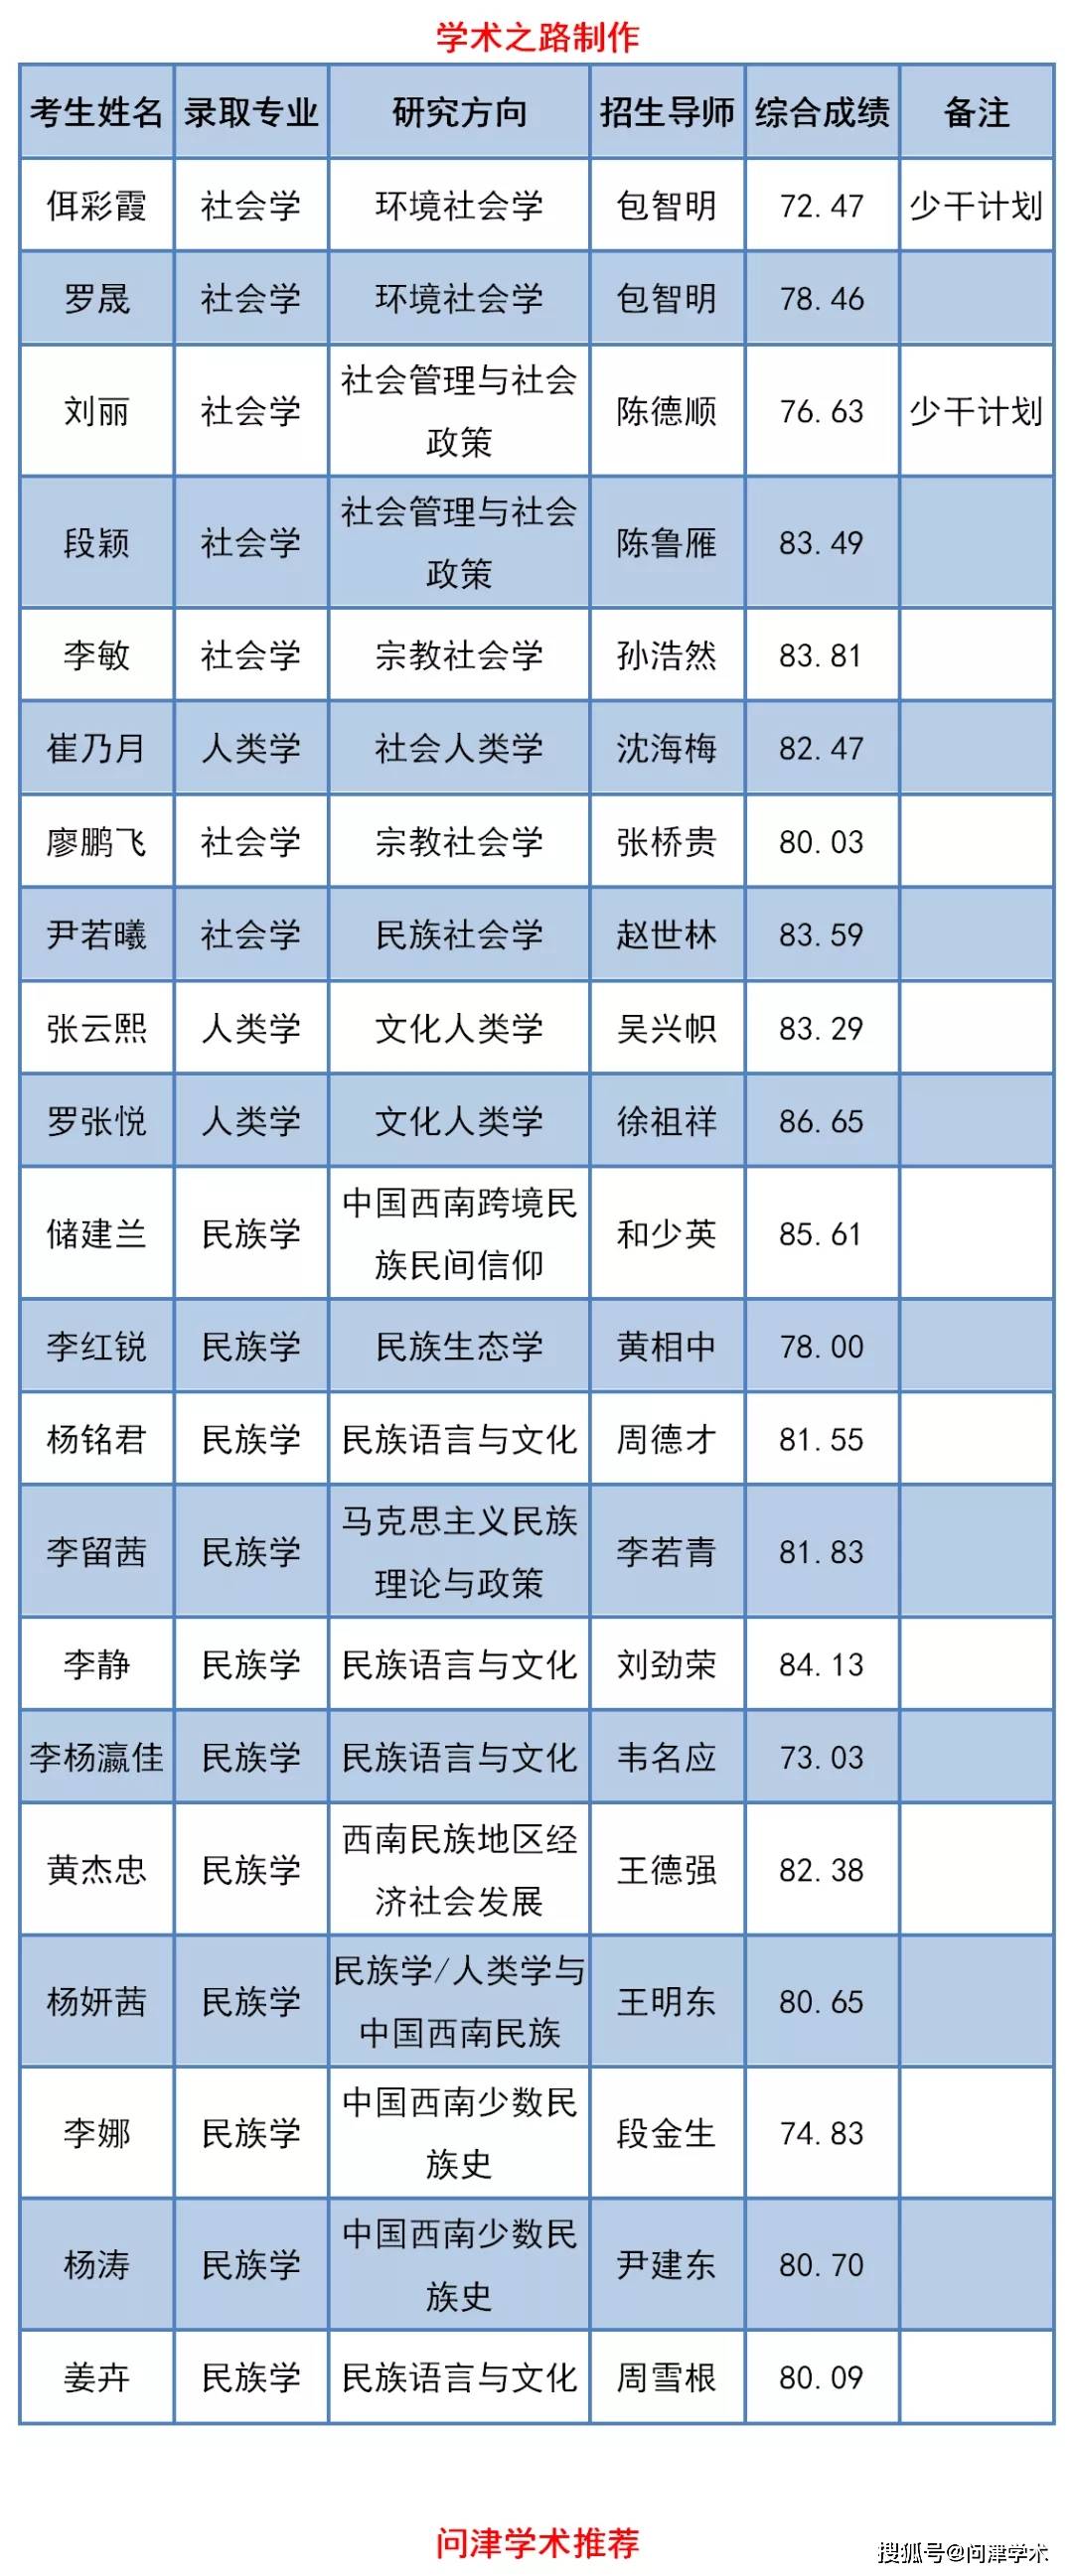 云南民族大学2020年博士研究生拟录取名单公示